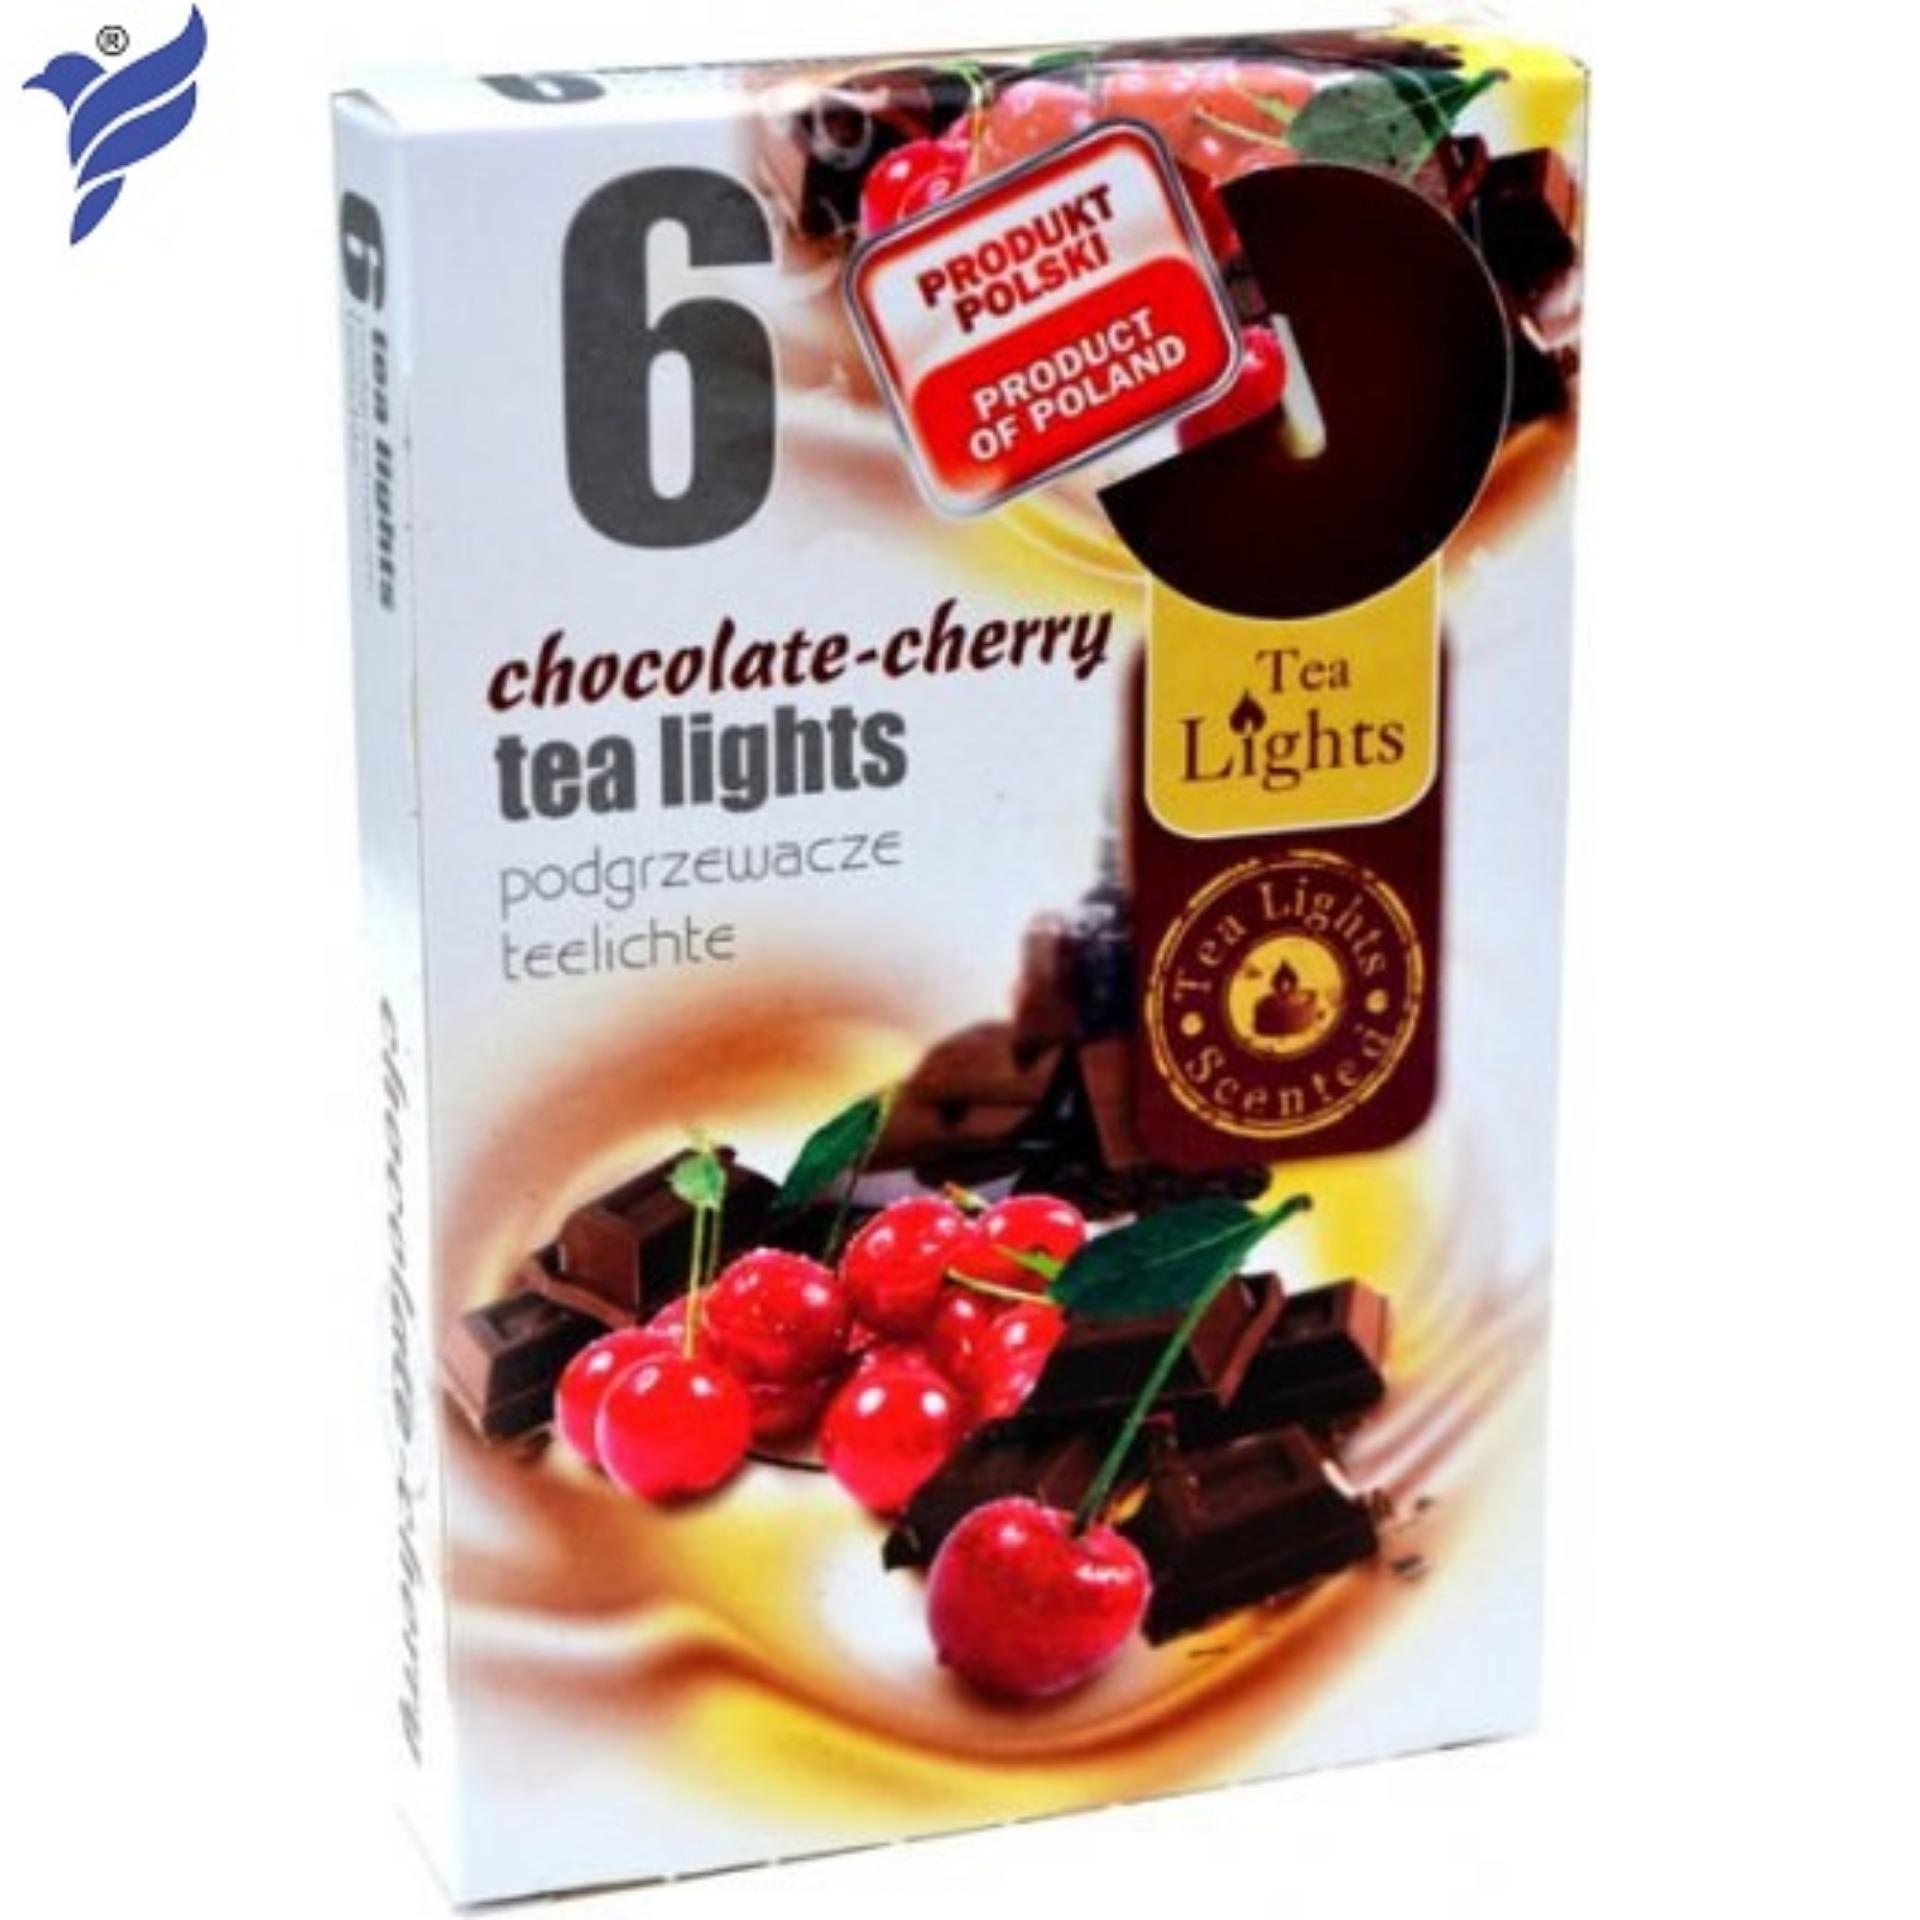 Bộ 2 Hộp nến thơm Tea lights Admit Chocolate Cherry ADM6640 (Hương sôcôla & quả cherry)